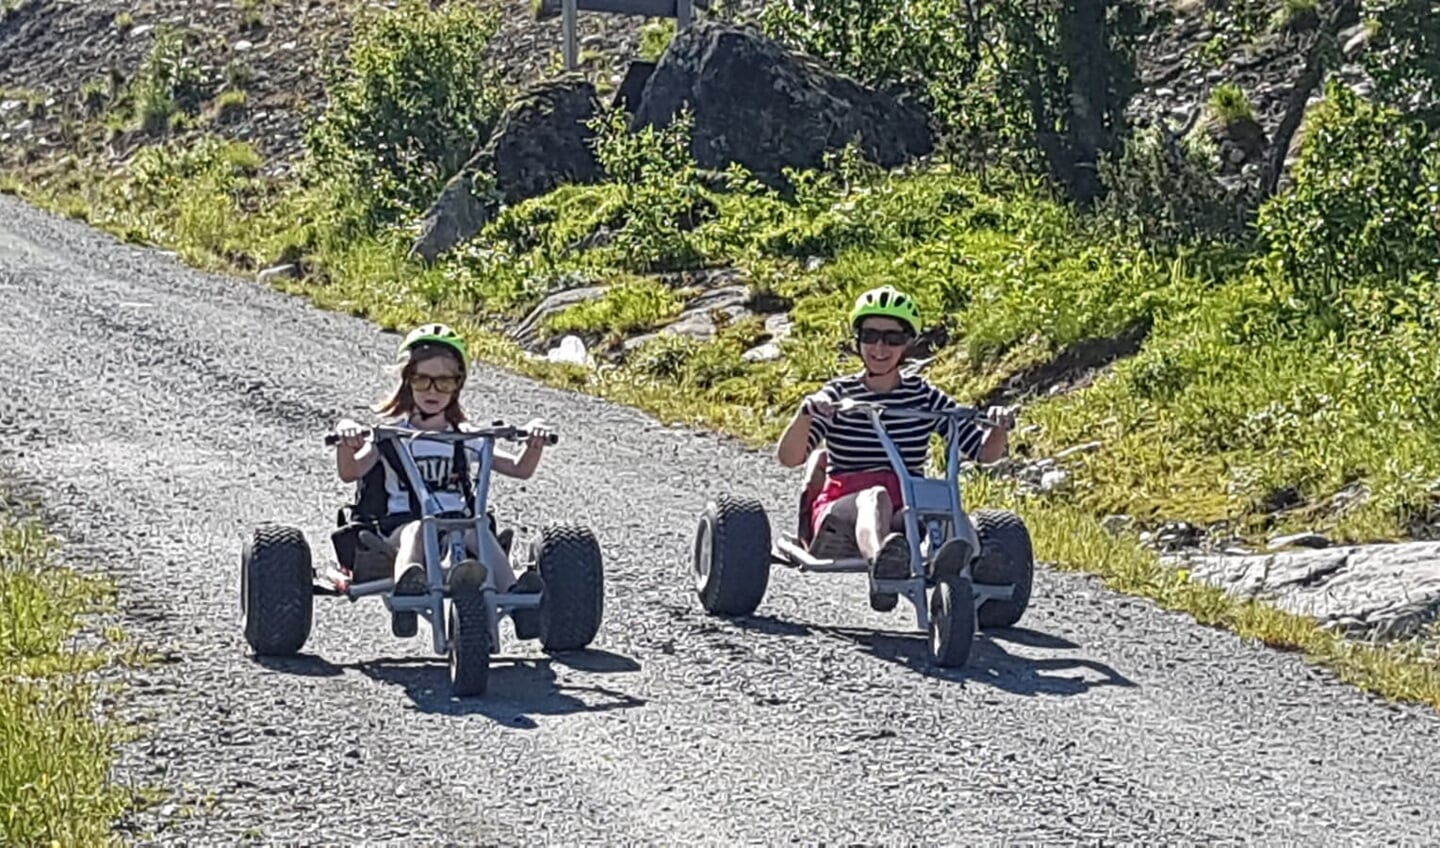 Vet hard met een mountain cart de berg af in Noorwegen. Dieke en Monique van Rossum